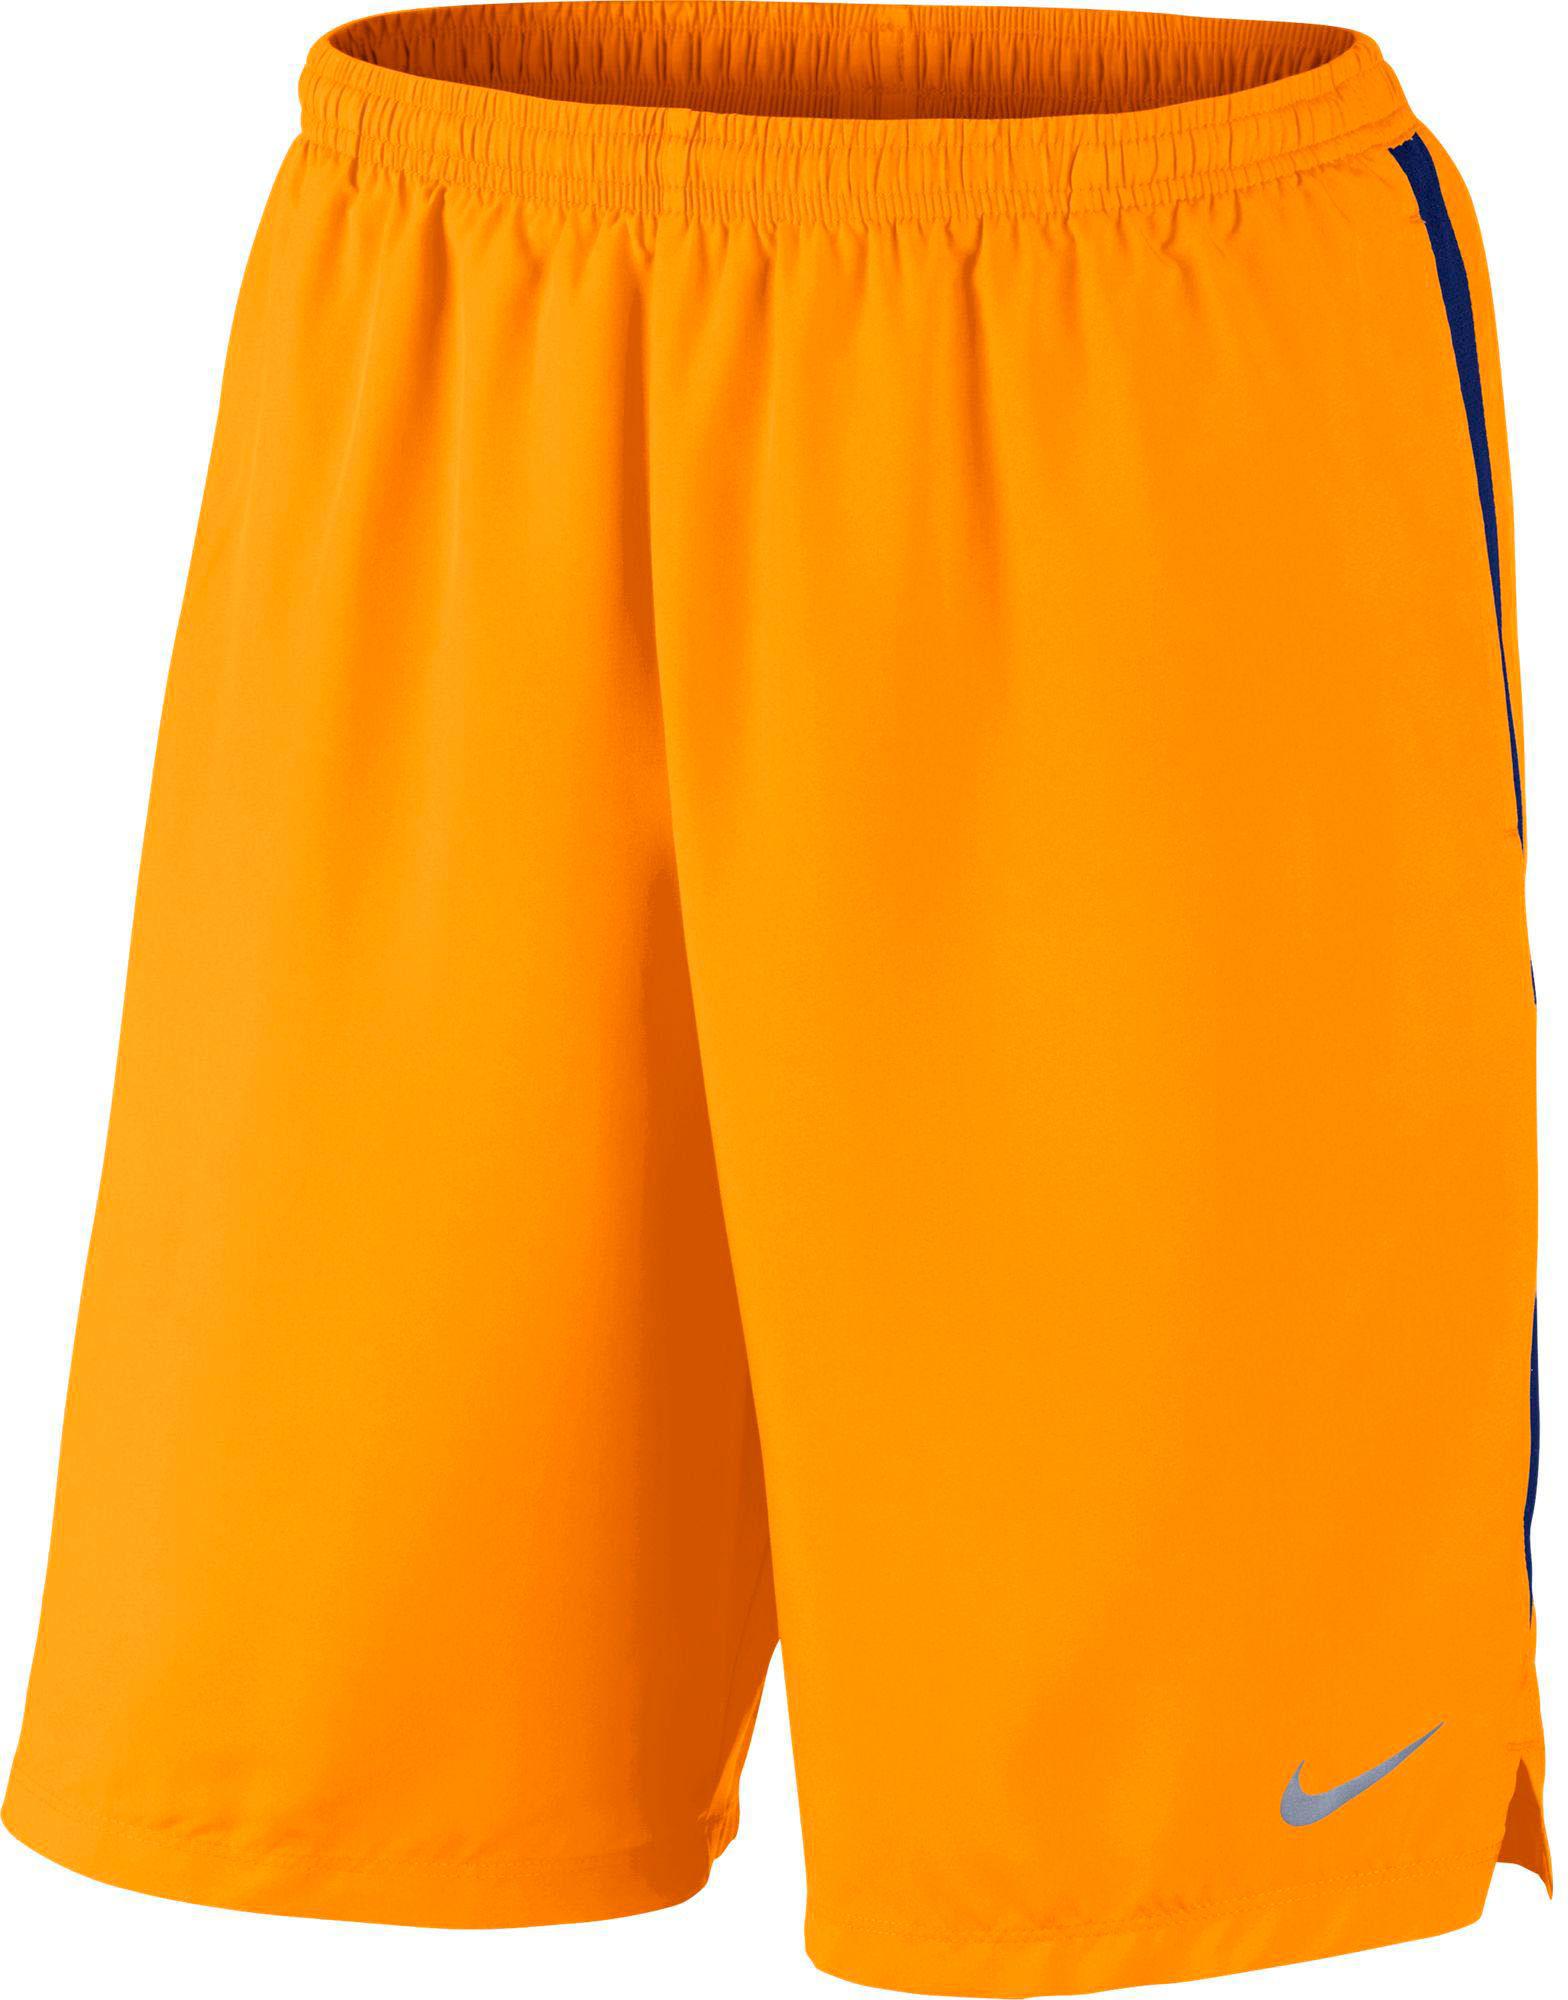 nike shorts men orange